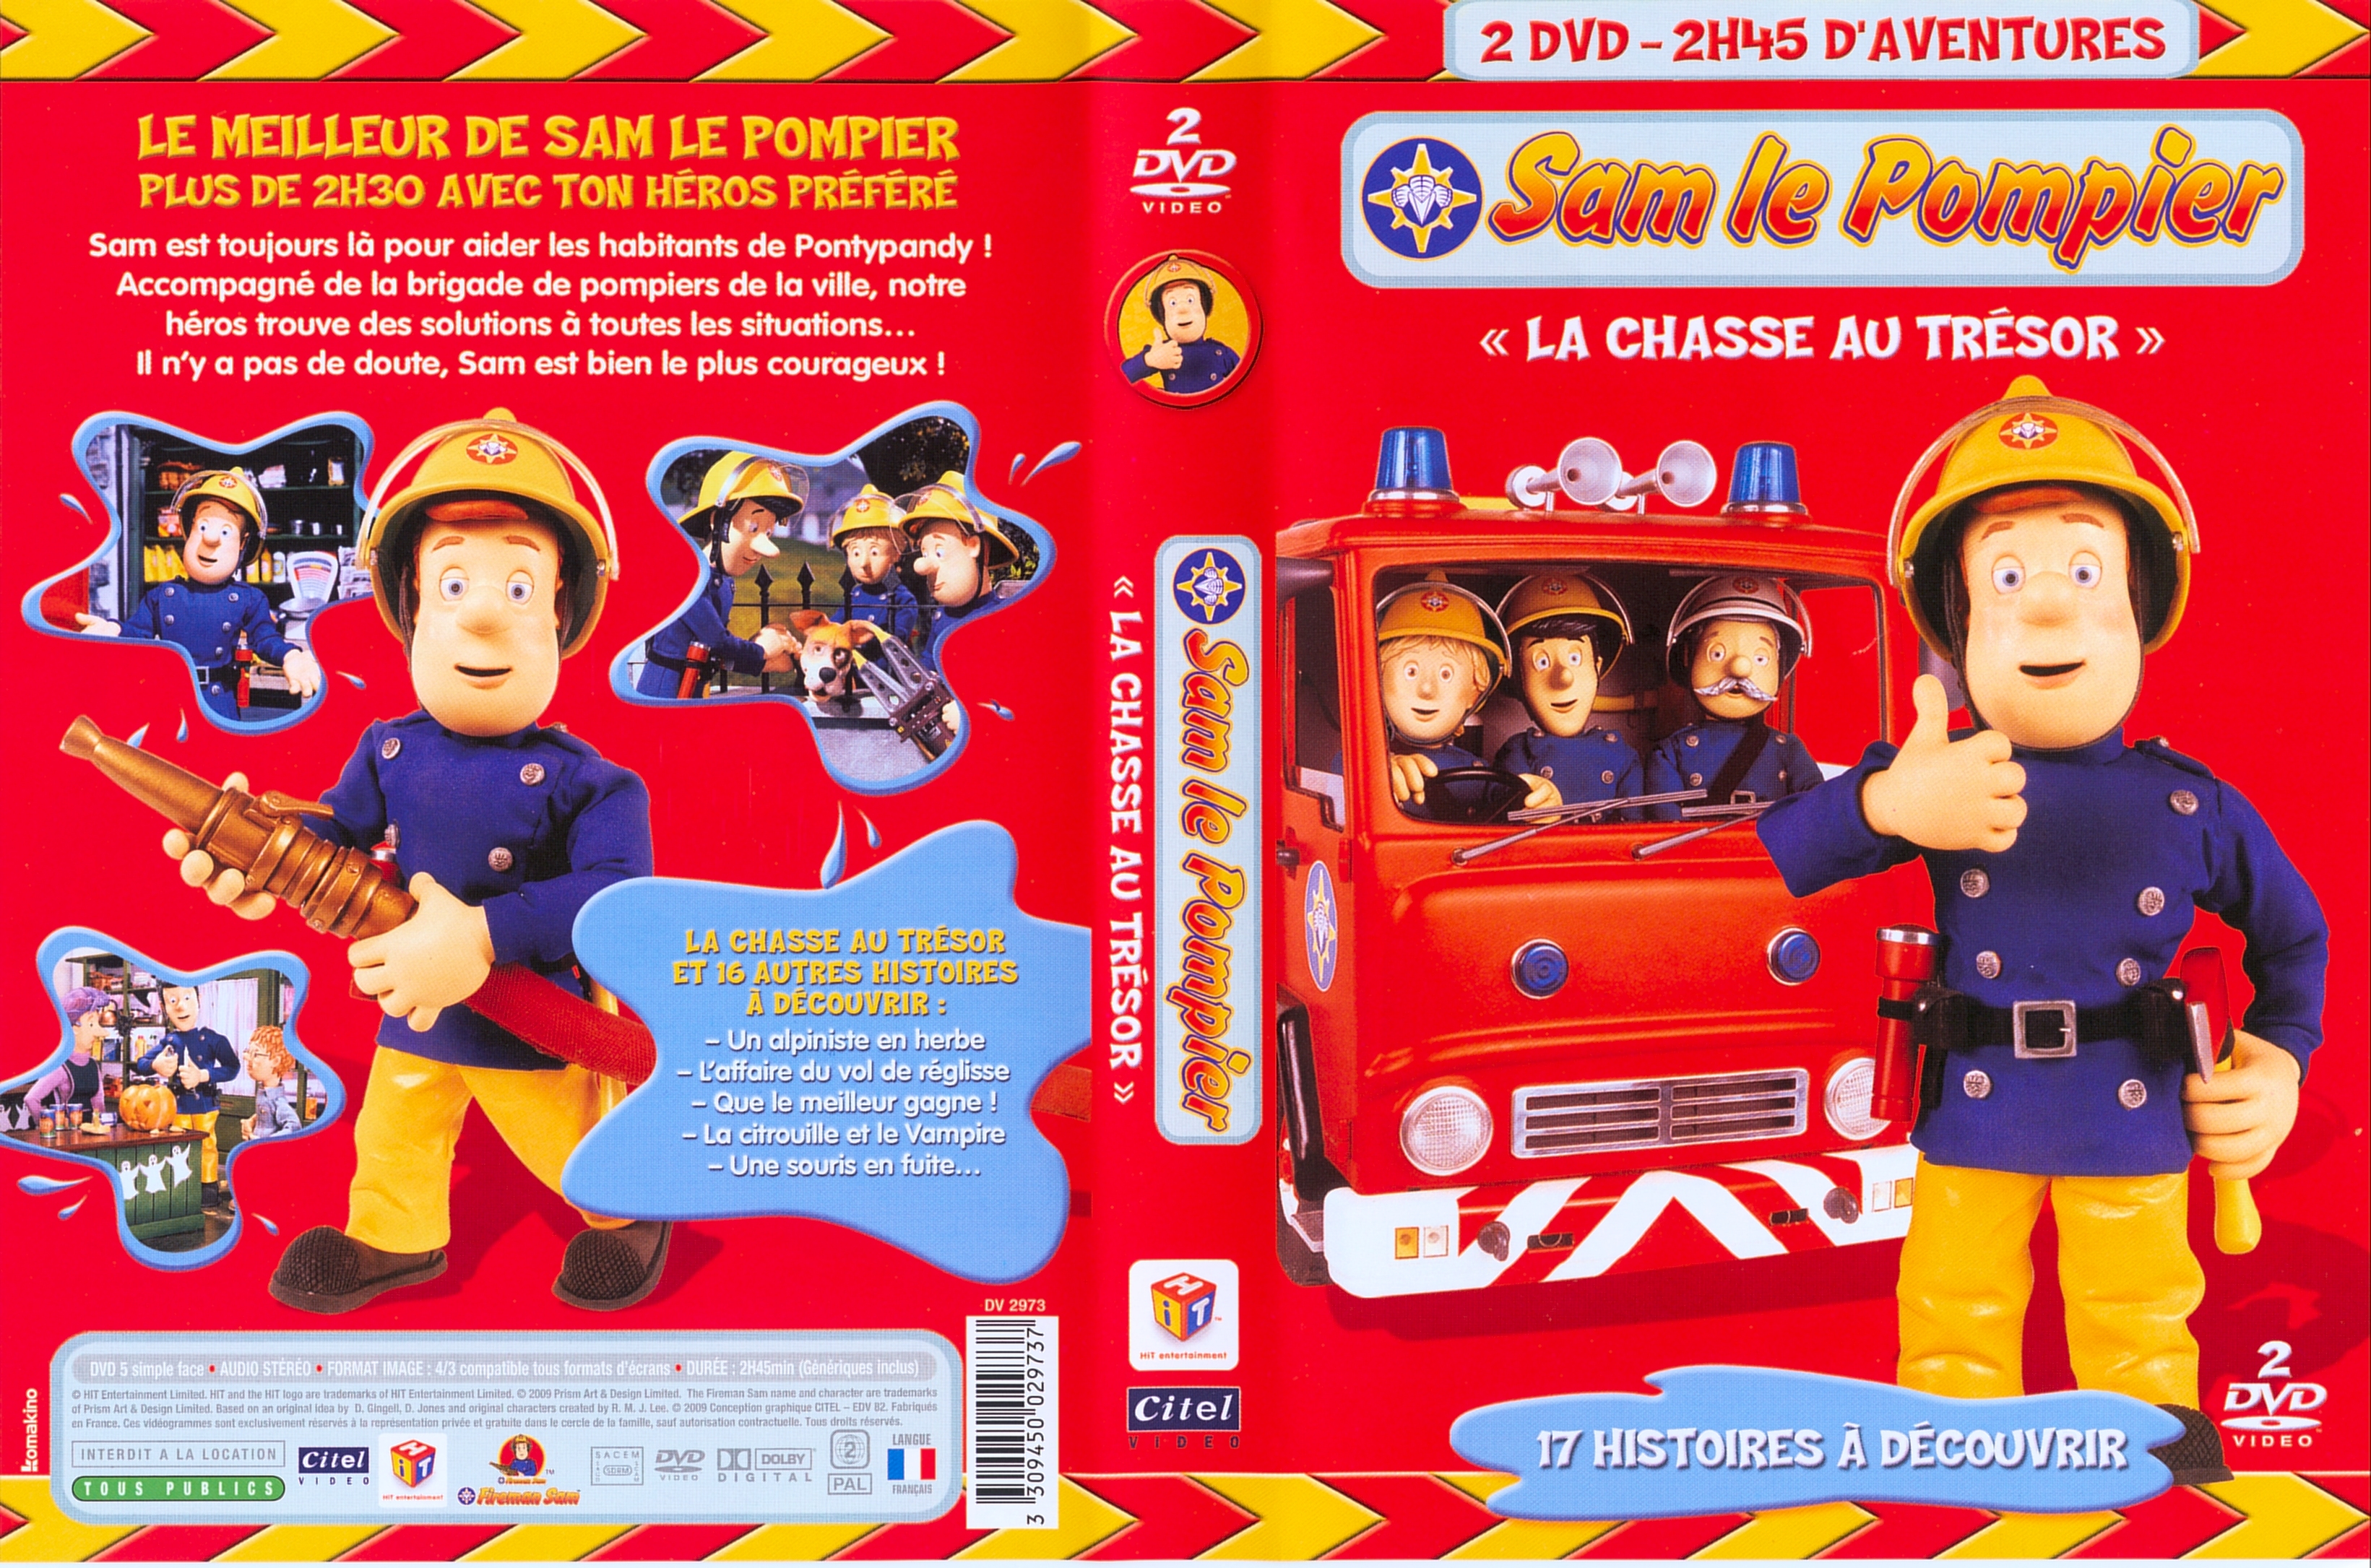 Jaquette DVD Sam le pompier - La chasse au trsor